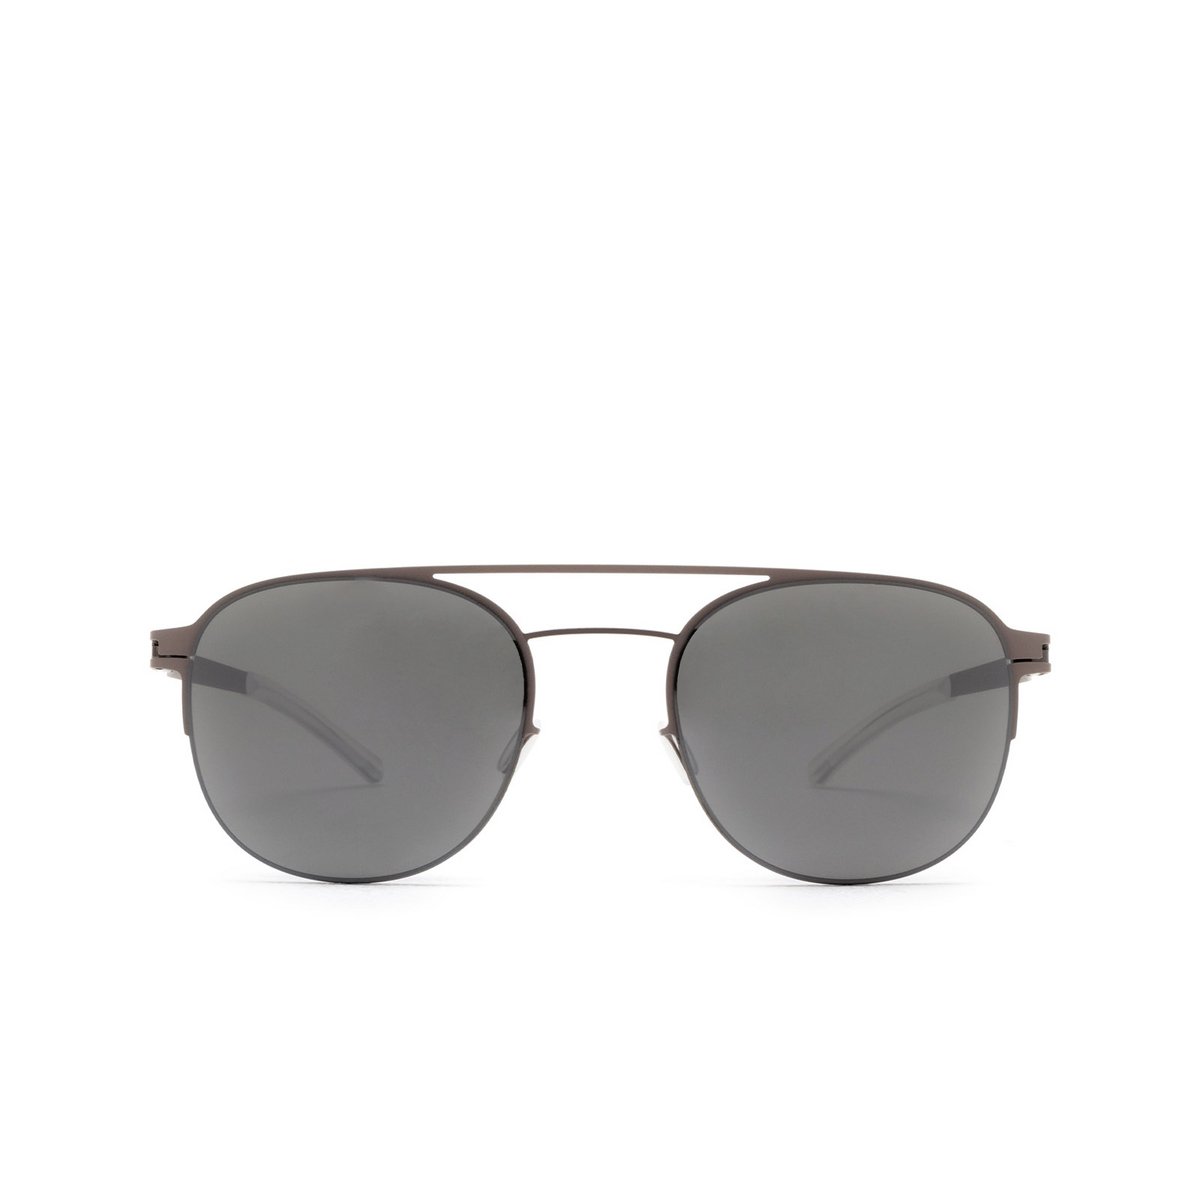 Mykita PARK Sunglasses 235 Shiny Graphite/Mole Grey - 1/4